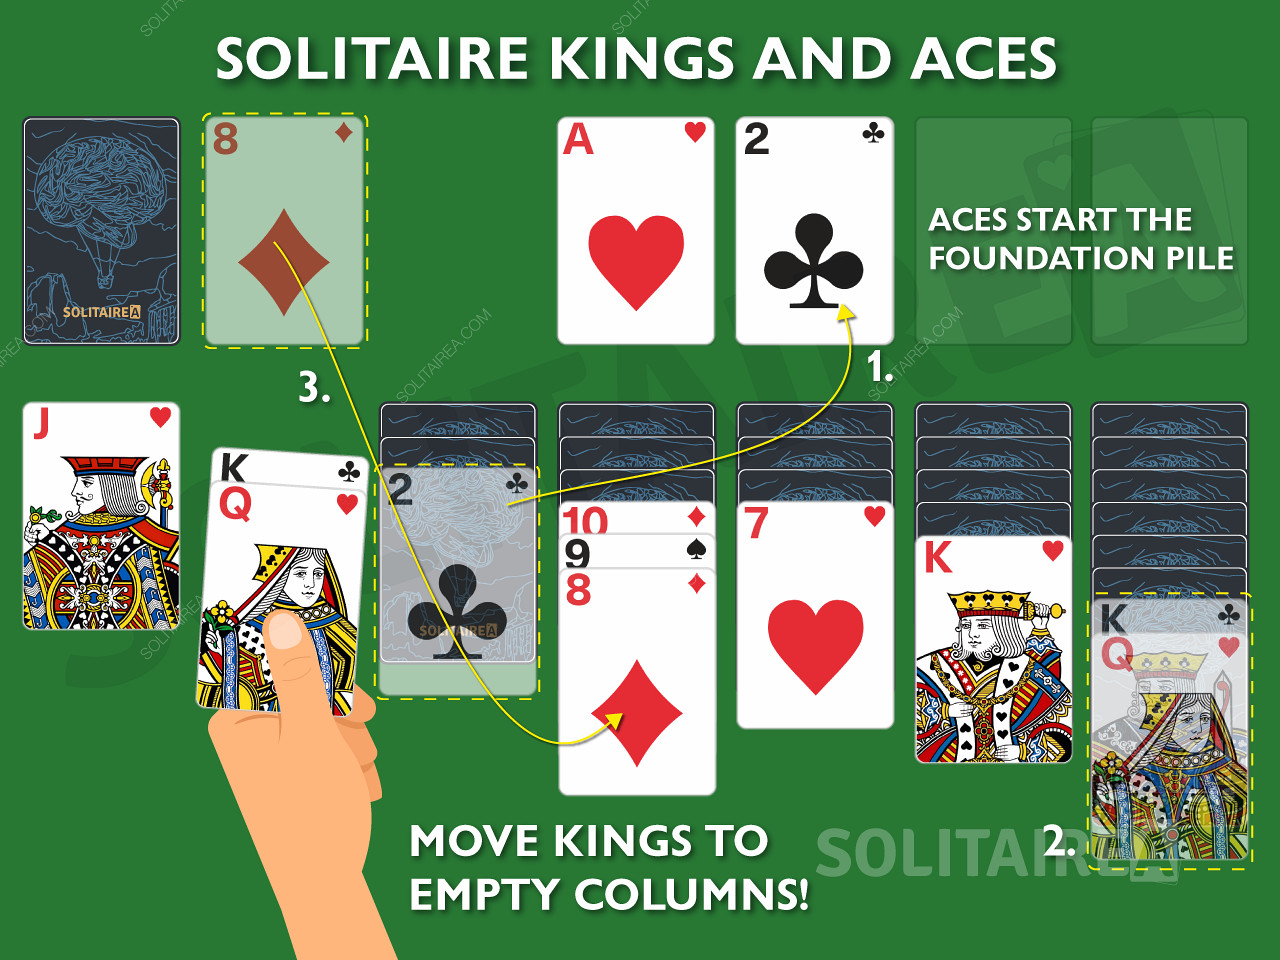 Králové a esa jsou v Solitaire důležité karty, protože umožňují jedinečné tahy.